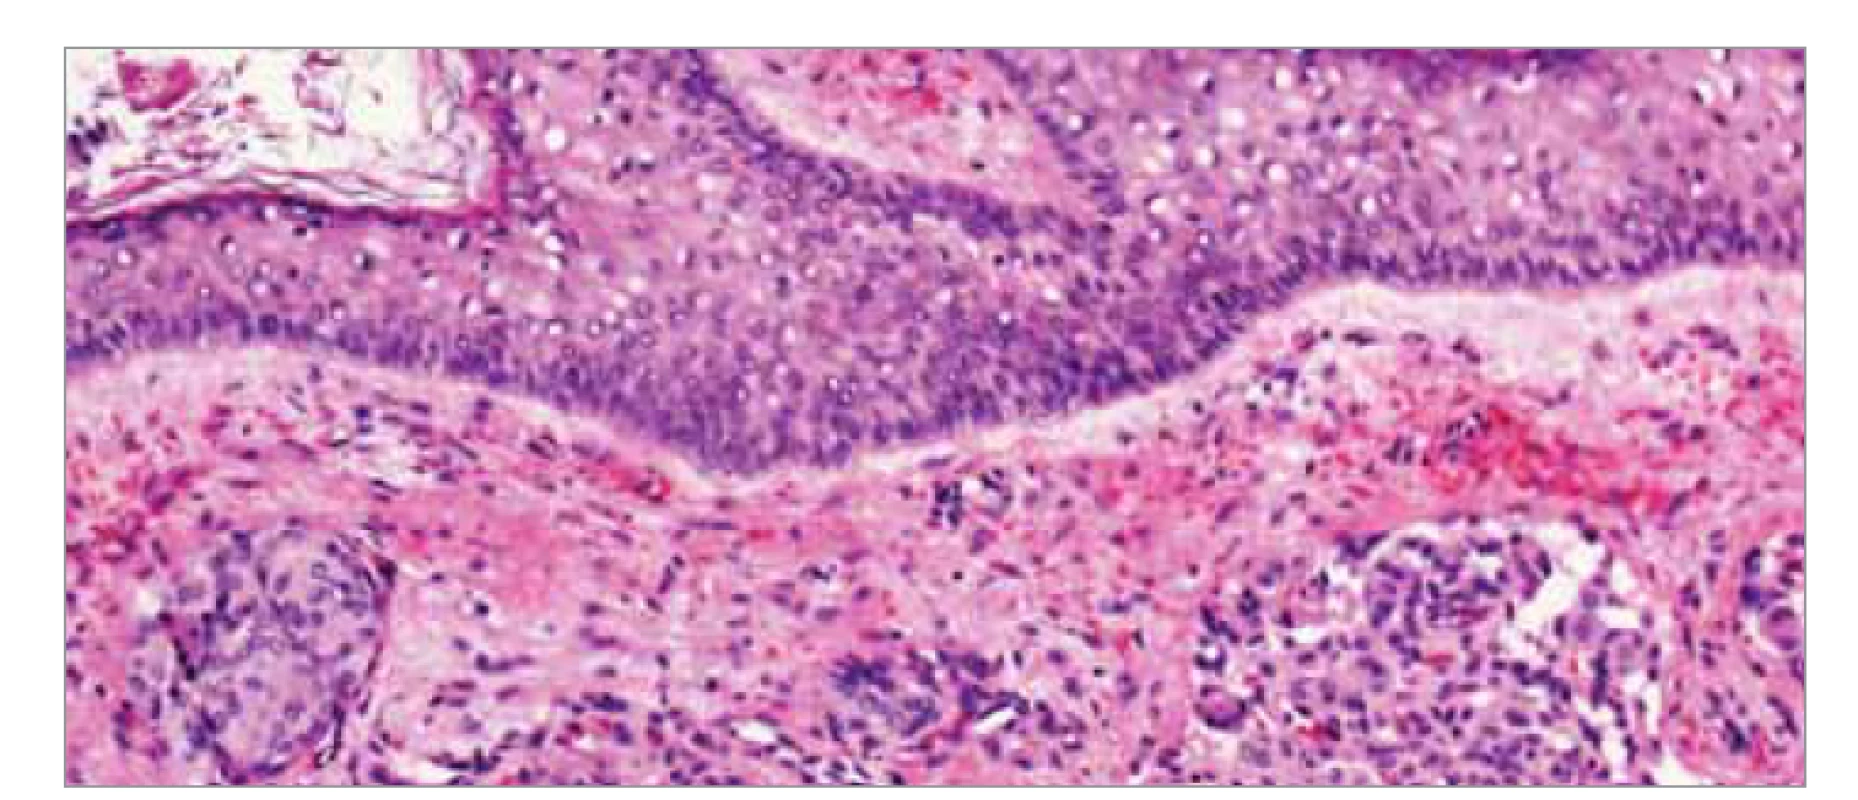 Histologické vyšetření meningeomu I. stupně podle WHO, barvení hematoxylin-
eozin. Je přítomný fragment tkáně kryté rohovějícím dlaždicobuněnčným
epitelem, pod kterým jsou v překrveném, lehce edematózním vazivovém
stromatu zastiženy nádorové struktury tvořené hnízdy buněk vzhledu
buněk meningoteliomatózních, s poměrně bohatou eozinofilní cytoplazmou,
oválnými jádry s mírnou anizokaryózou, jemným chromatinem, bez mitóz
a bez výraznějších atypií.<br>
Fig. 3. Histological examination of WHO grade I meningoma, hematoxylin-eosin
staining. A fragment of tissue covered by horned squamous cell epithelium is presented,
under which tumor structures formed by nests of meningotheliomatous
cell-like cells with relatively rich eosinophilic cytoplasm, oval nuclei with mild anisocaryosis
and mild chromosome, and mild chromium.